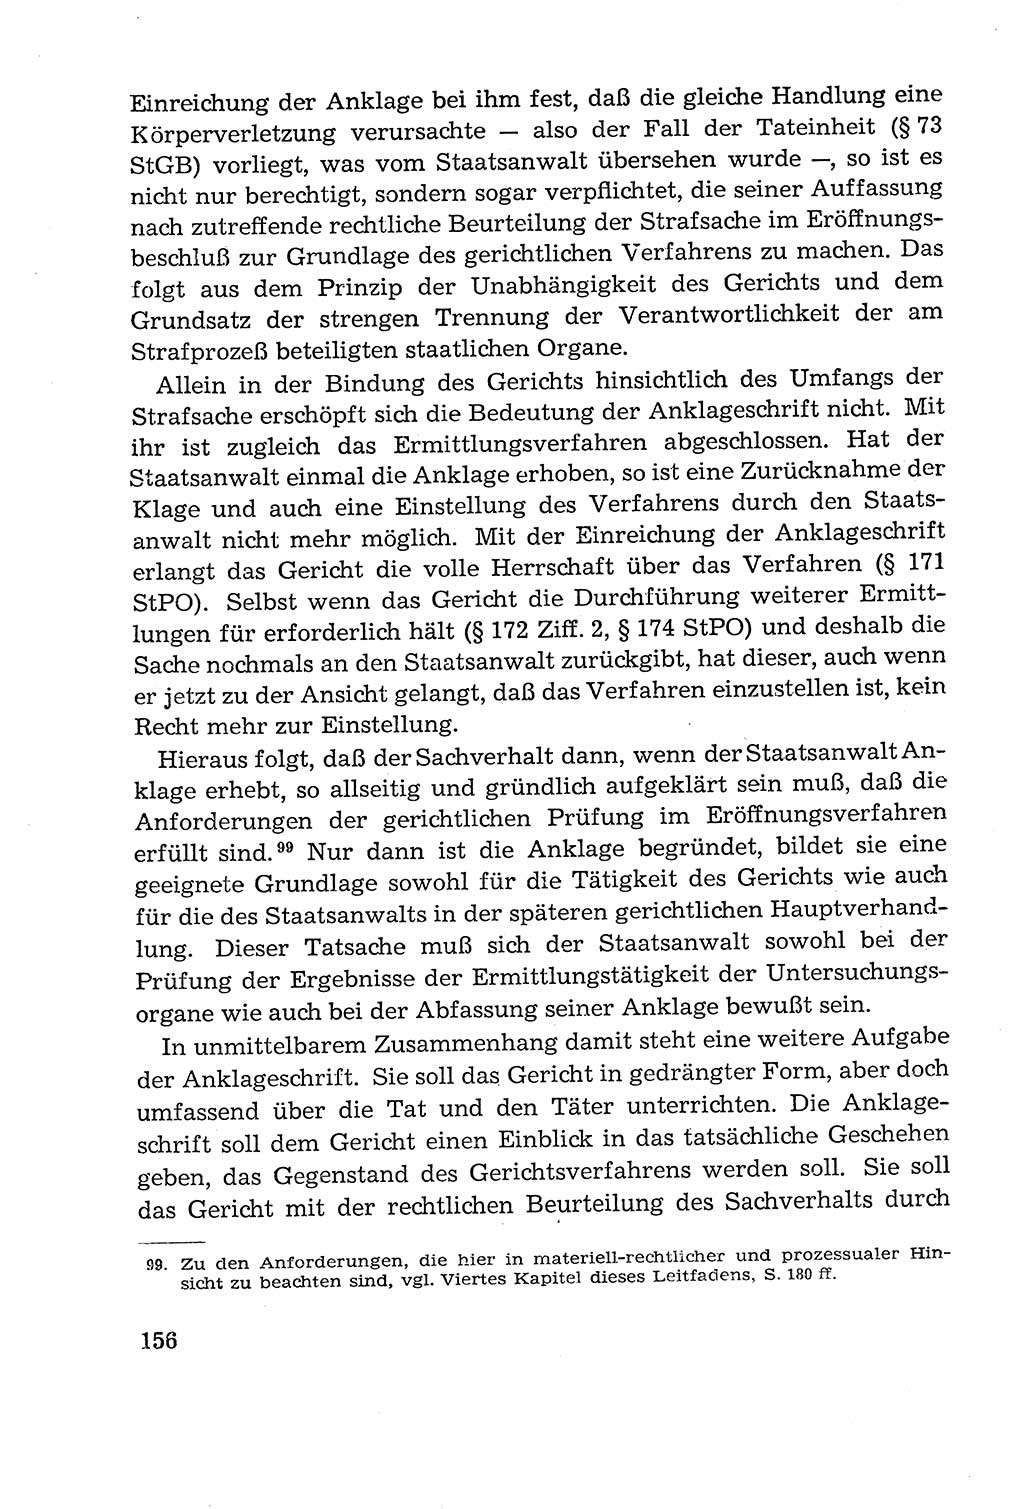 Leitfaden des Strafprozeßrechts der Deutschen Demokratischen Republik (DDR) 1959, Seite 156 (LF StPR DDR 1959, S. 156)